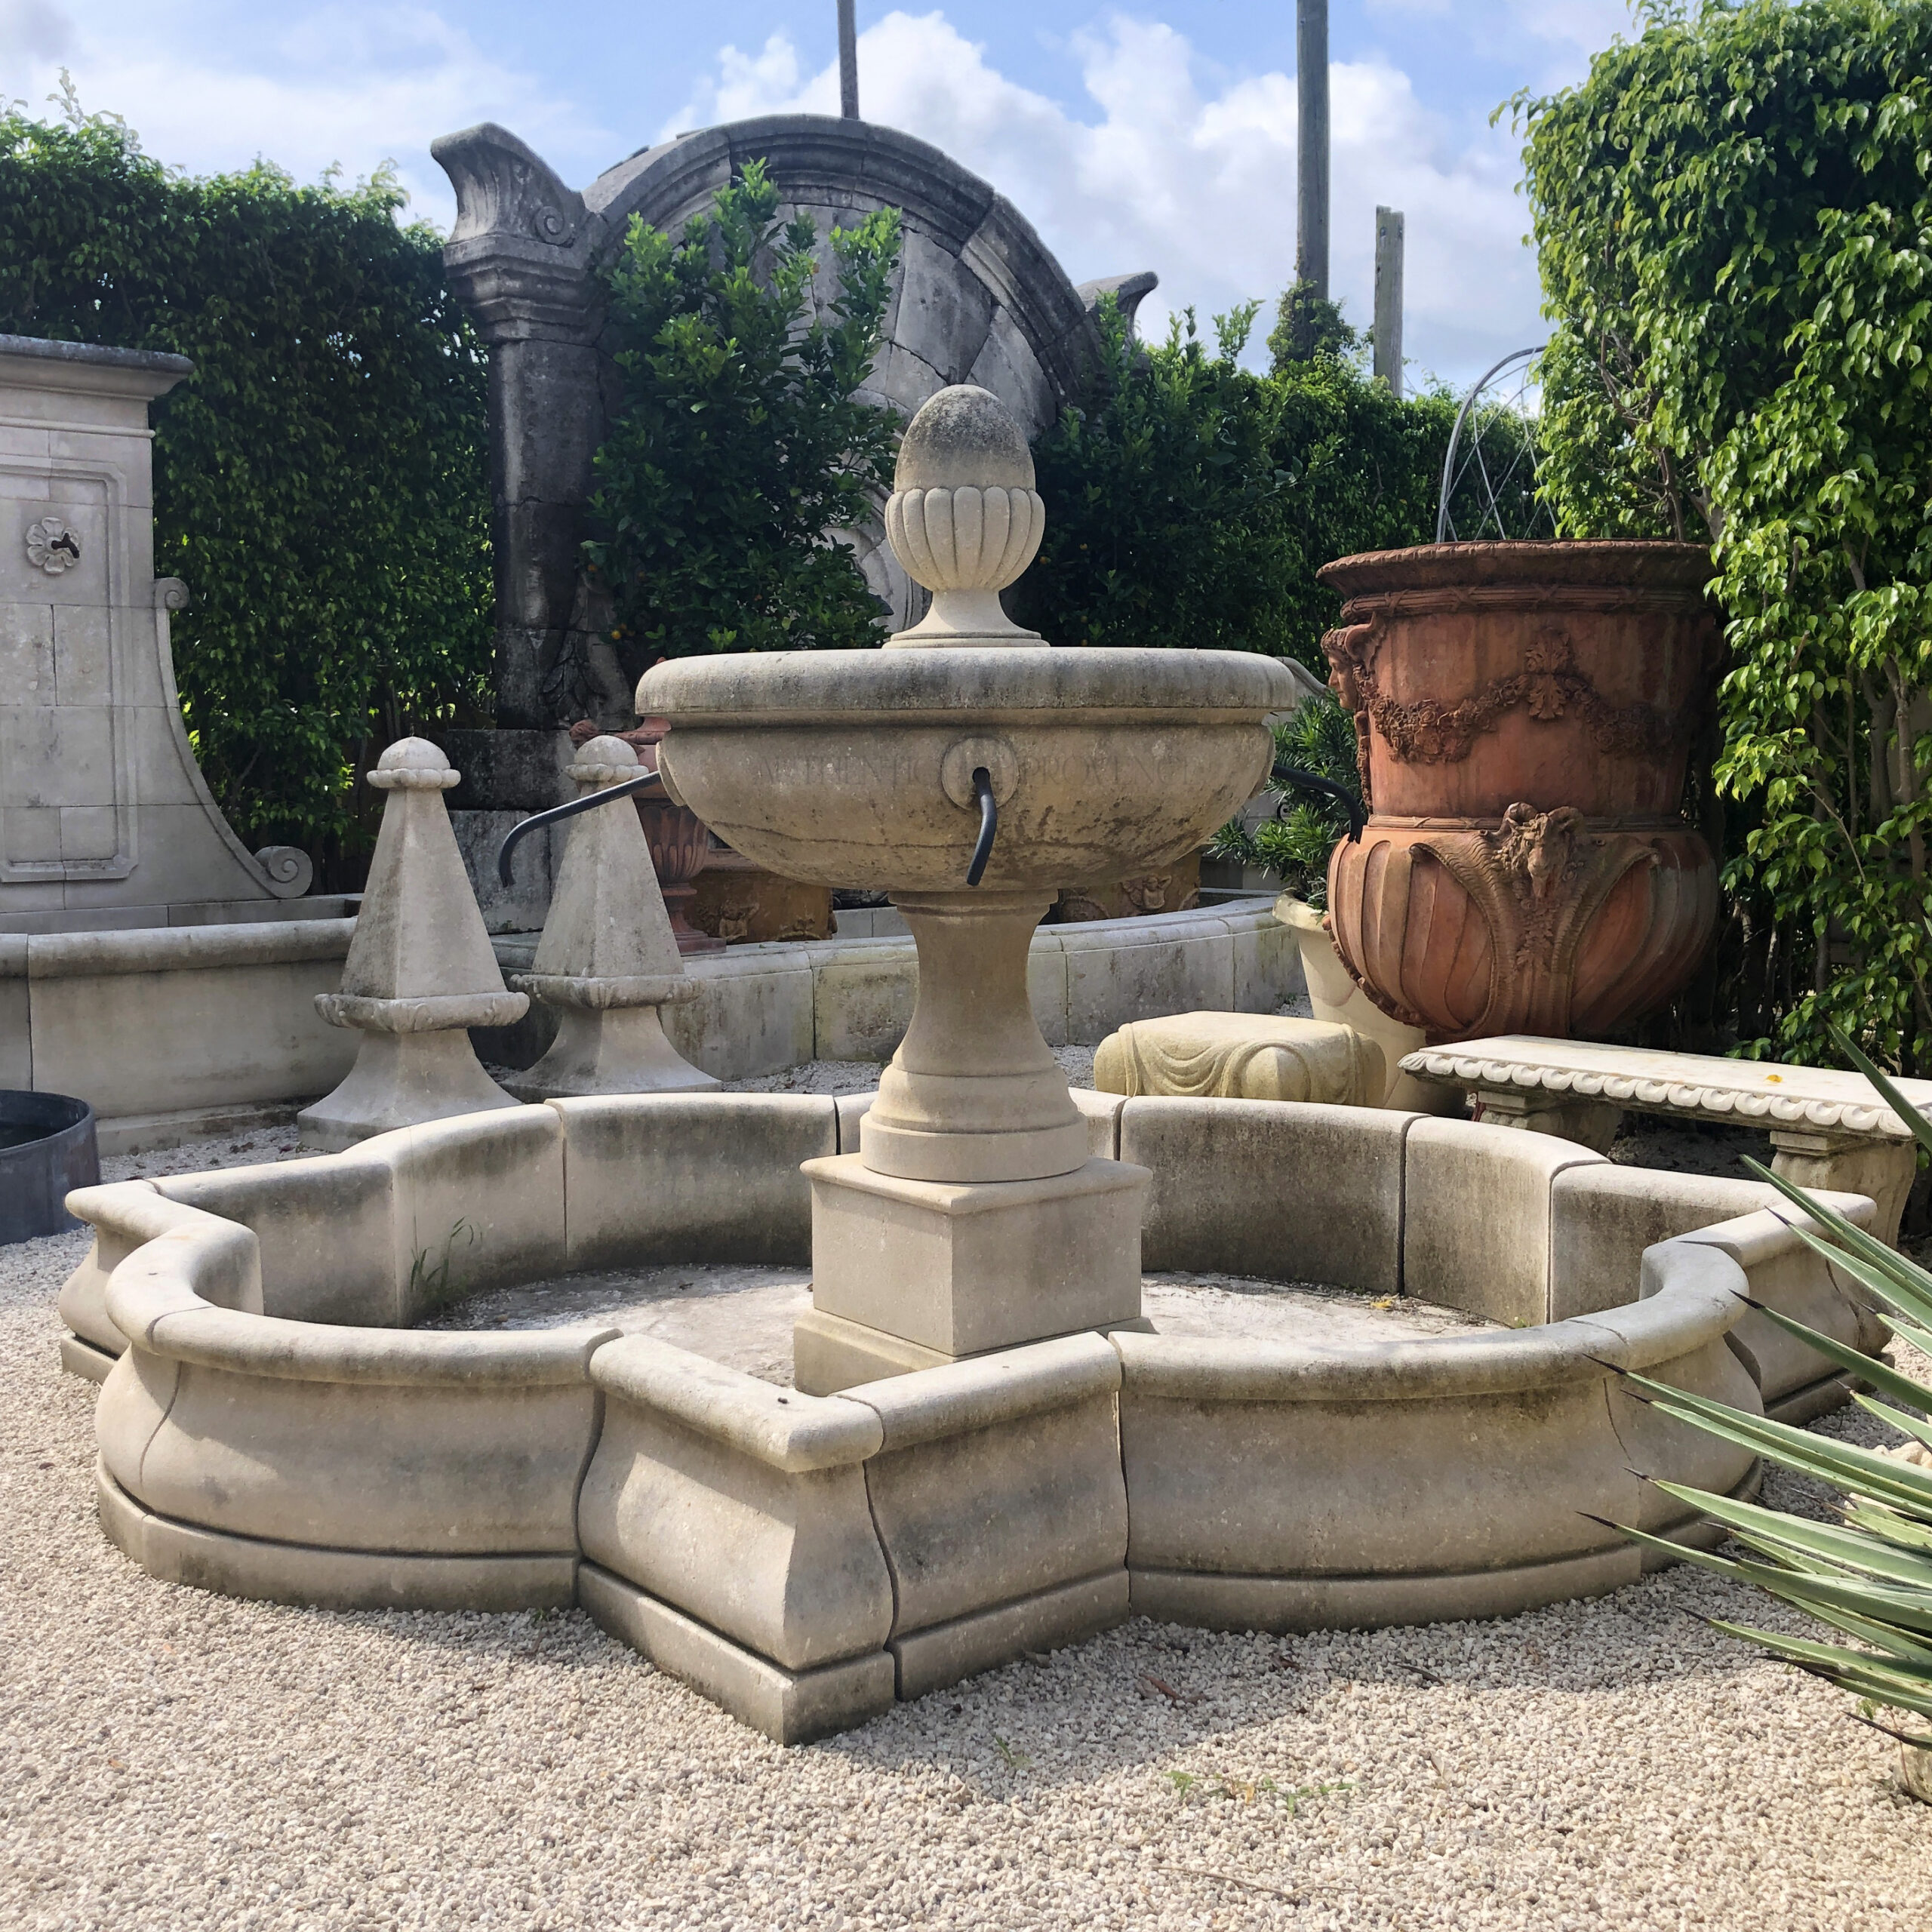 Clgarden ® niveau d'eau de source collecte wzs6 Jardin Fontaine wandbrunnen antique du 